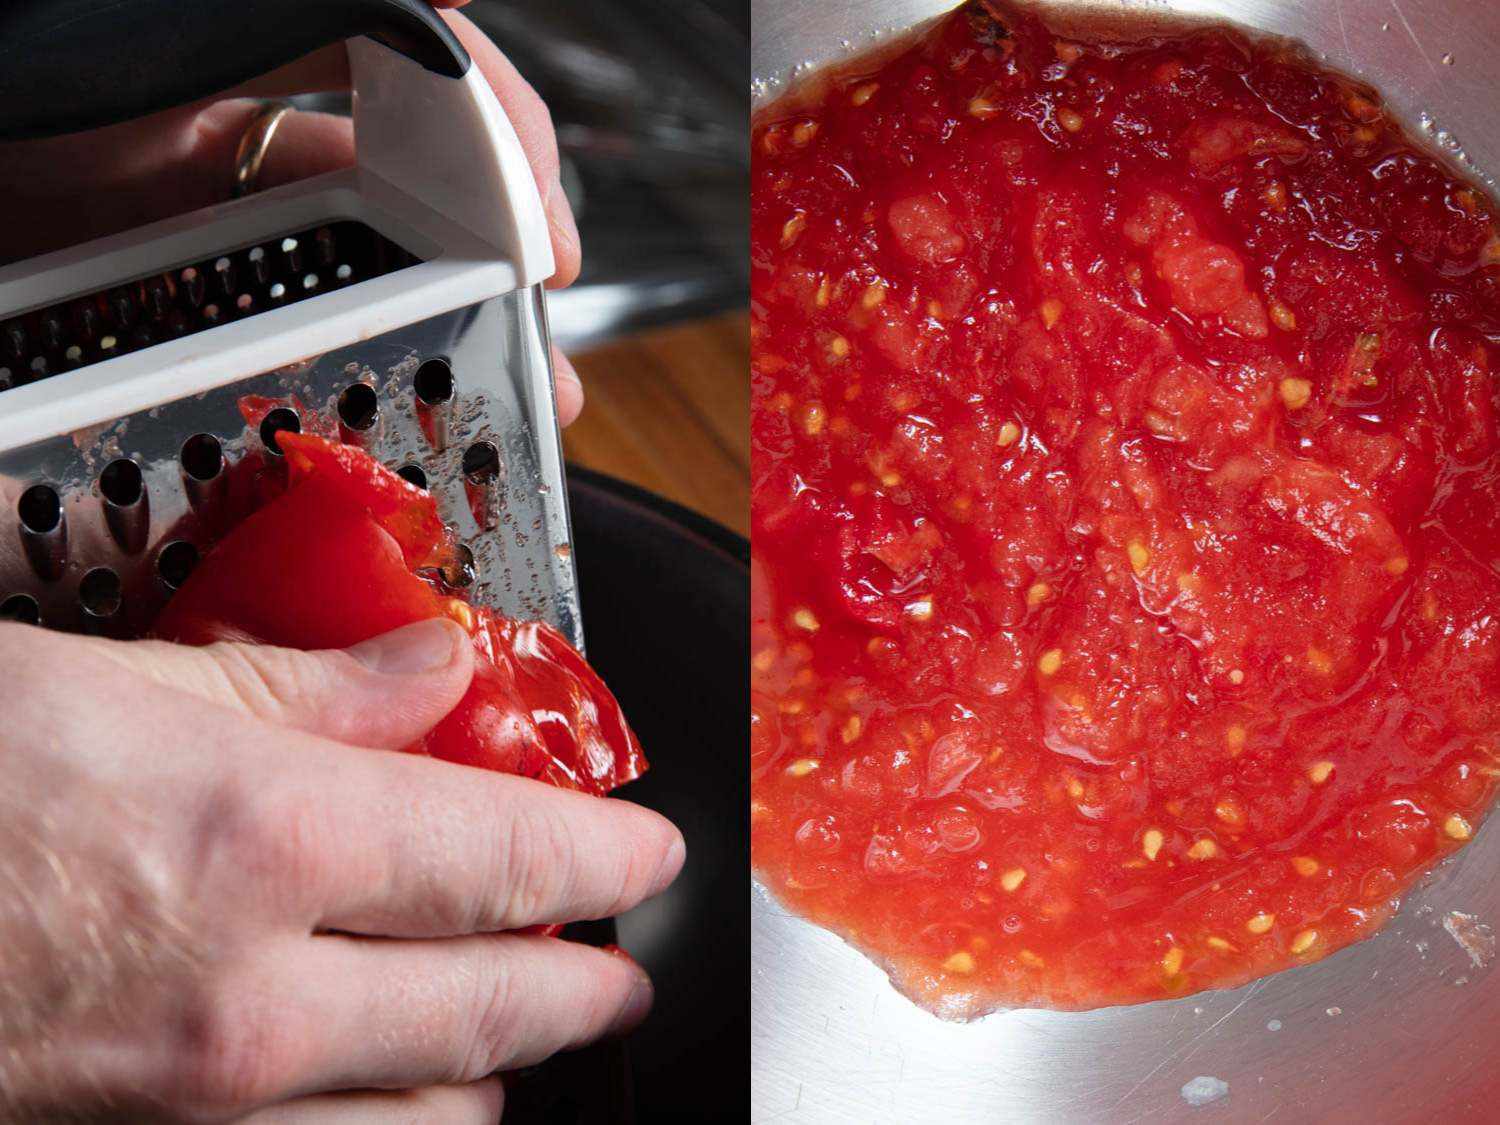 用盒子磨碎器磨碎新鲜番茄的拼贴照片。